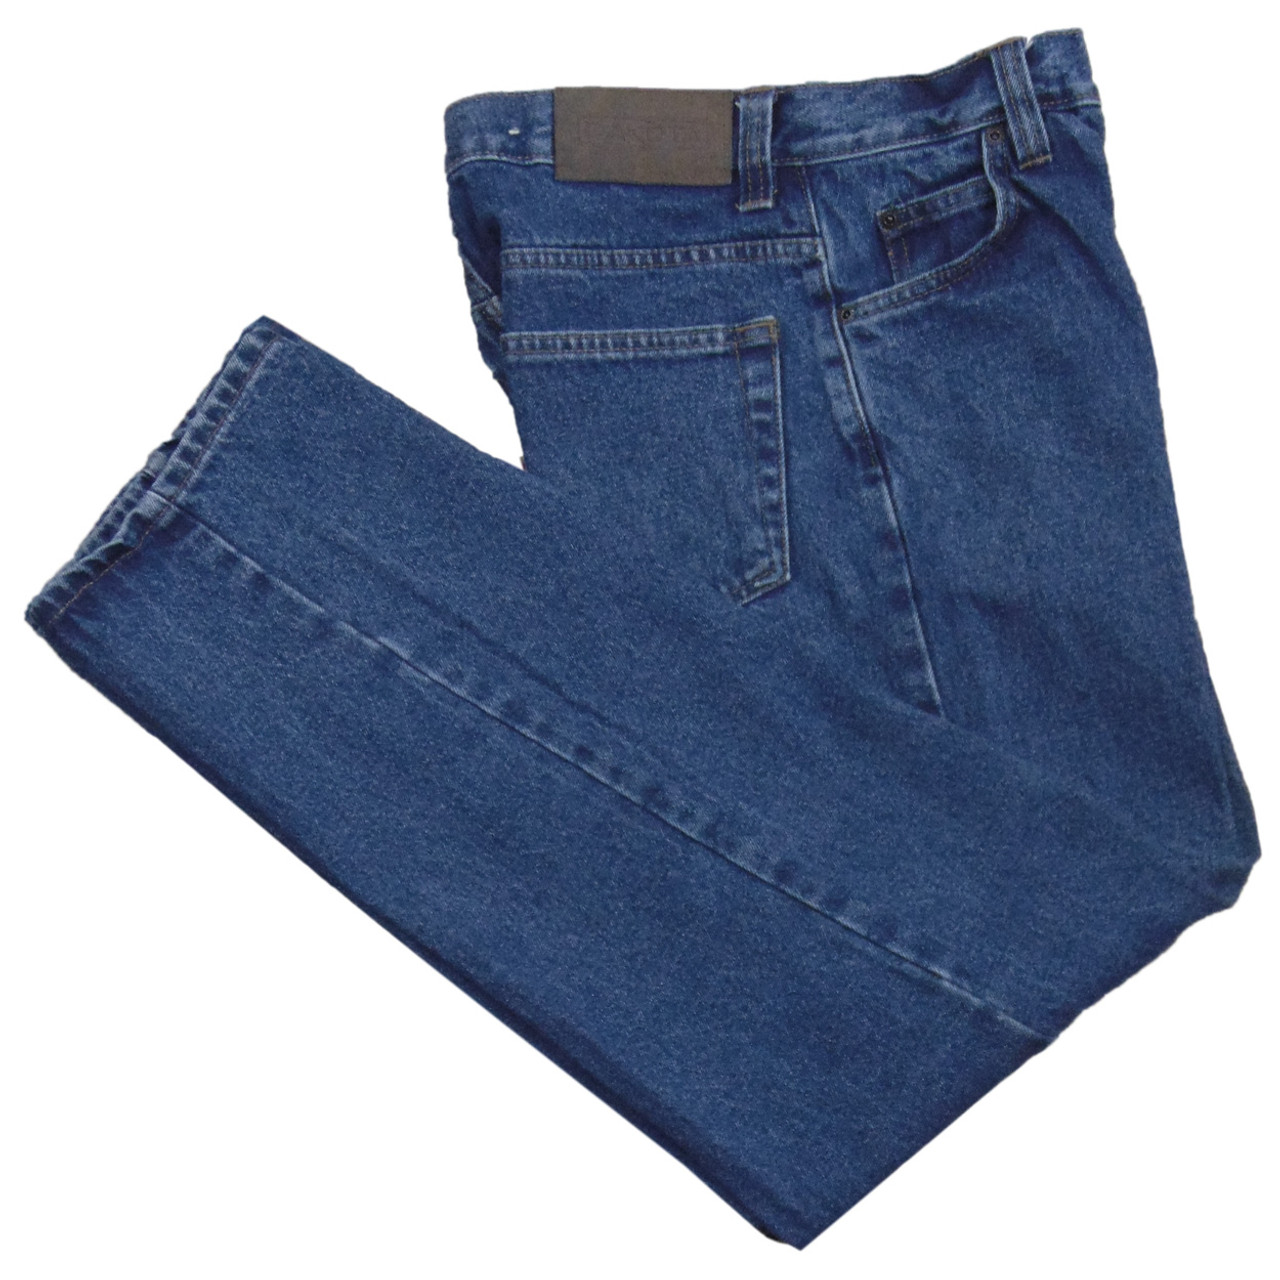 Brand New Dakota Jeans Work Jeans Size 30 X 32